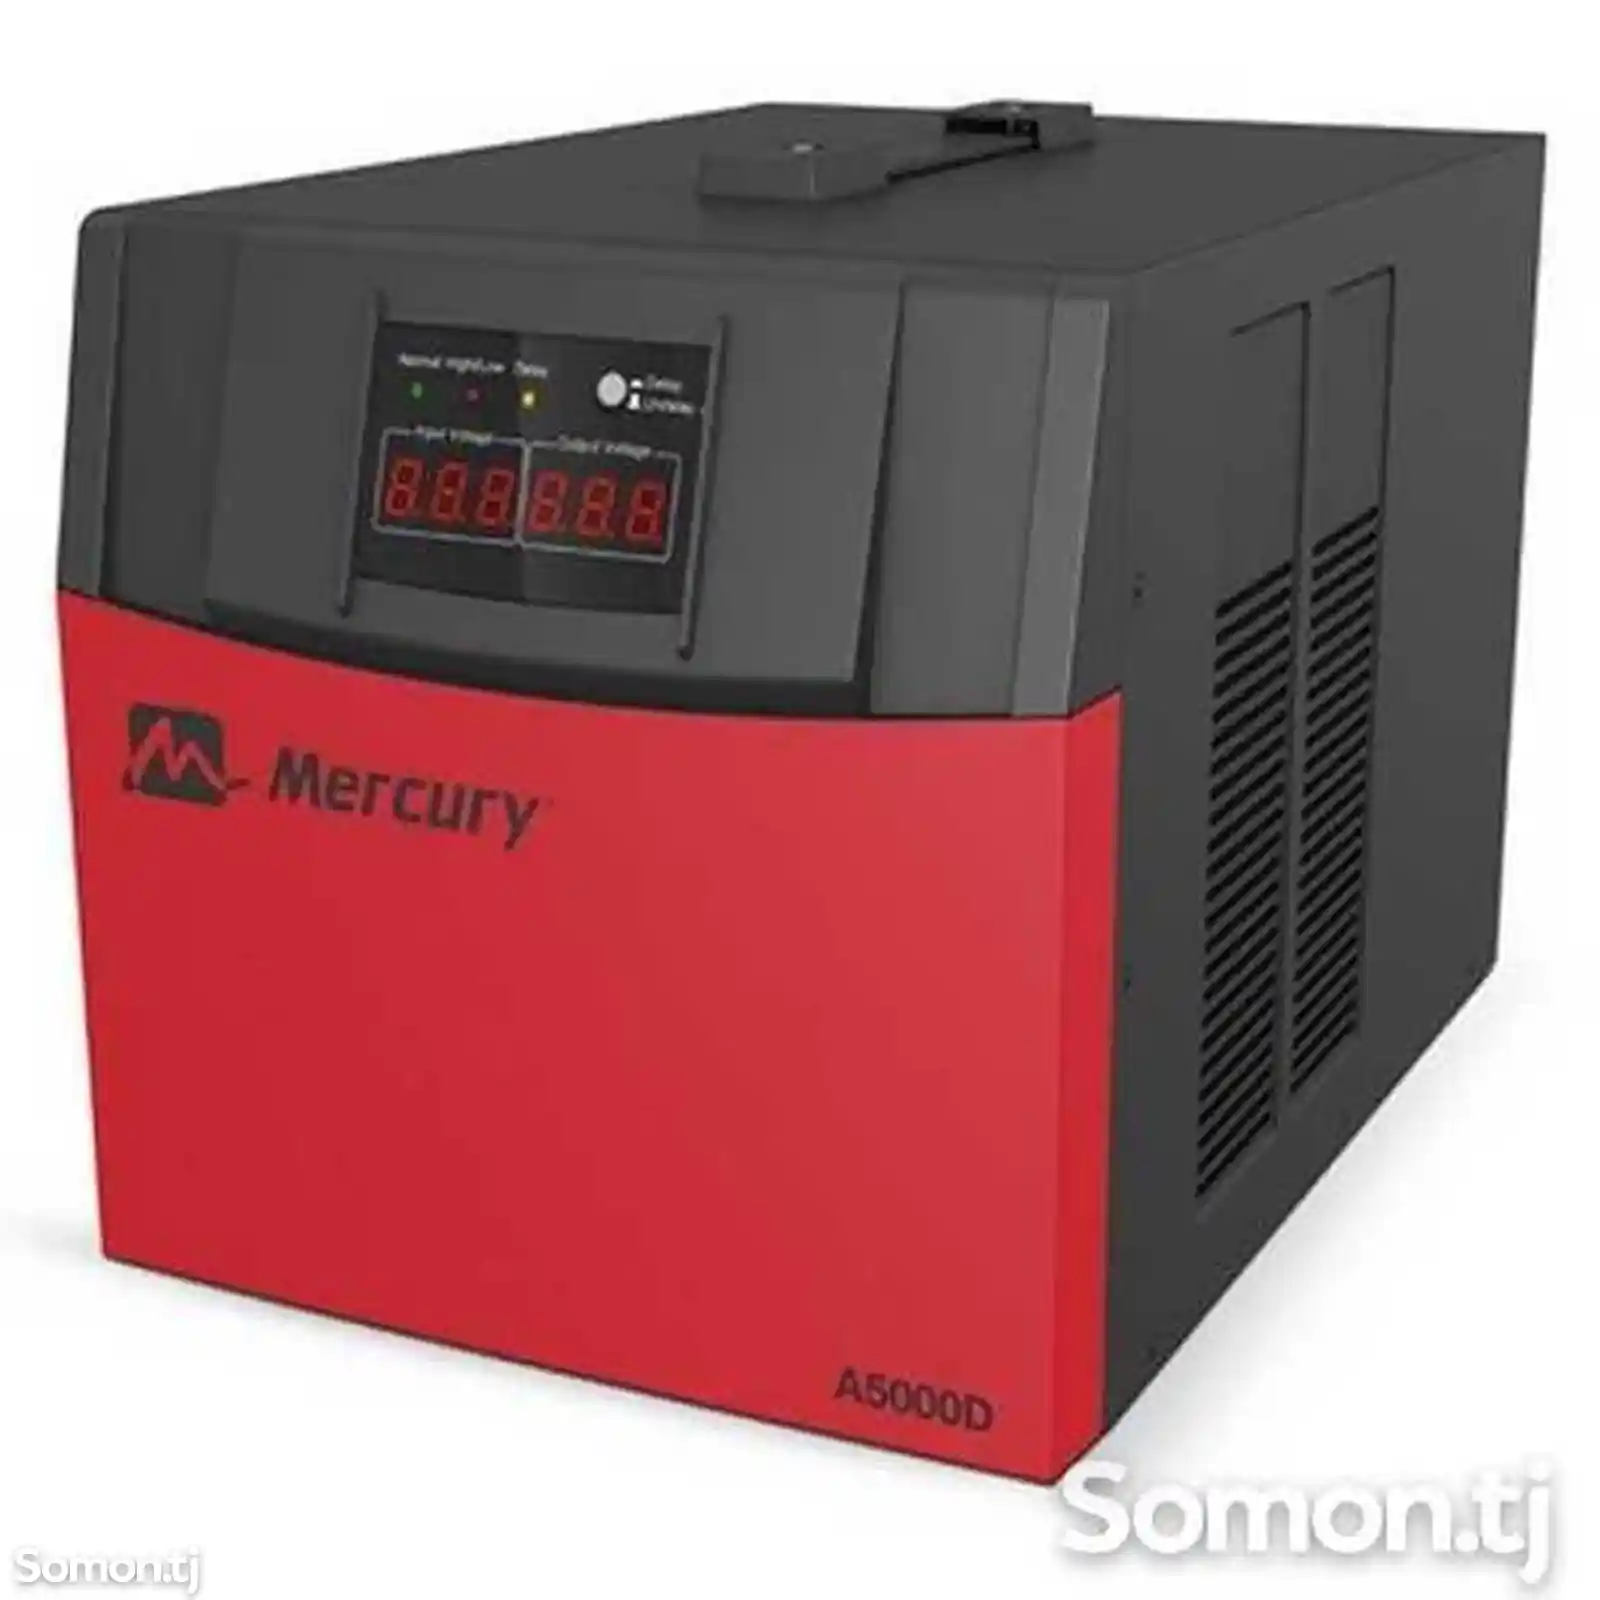 Стабилизатор Mercury A5000d-1